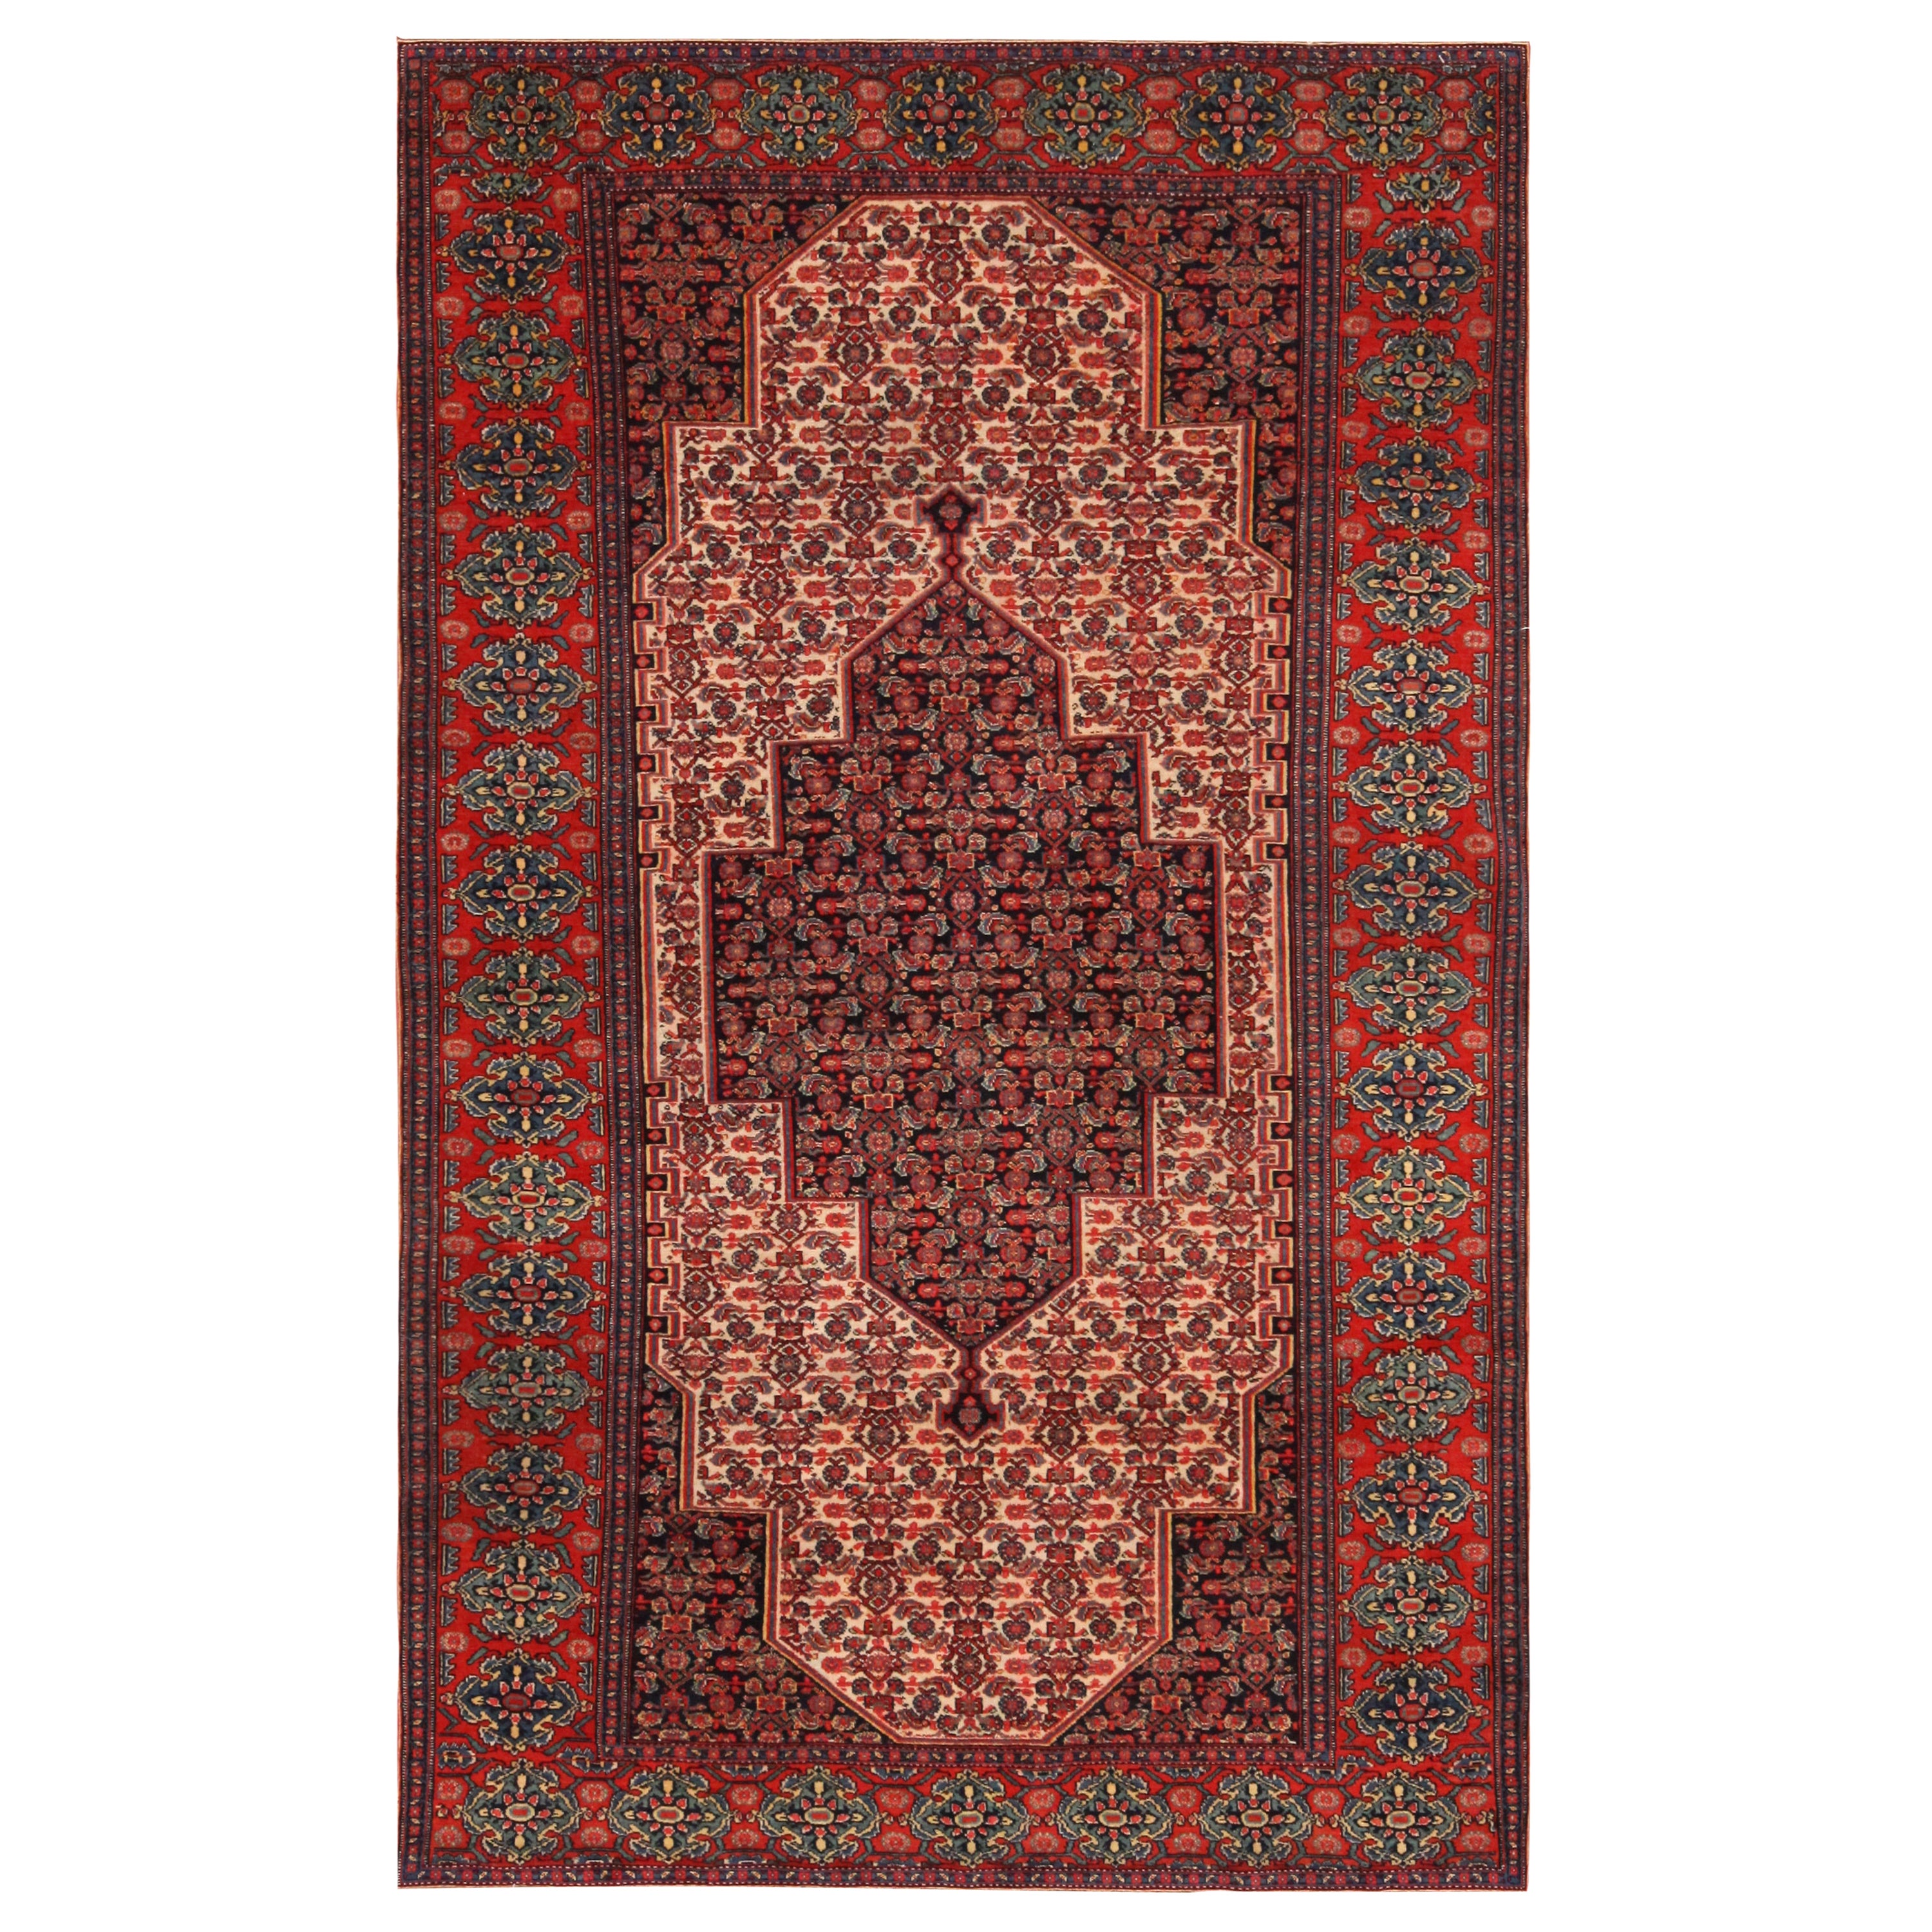 Feiner antiker persischer Senneh-Teppich aus Senneh. 4 ft 3 in x 6 ft 11 in